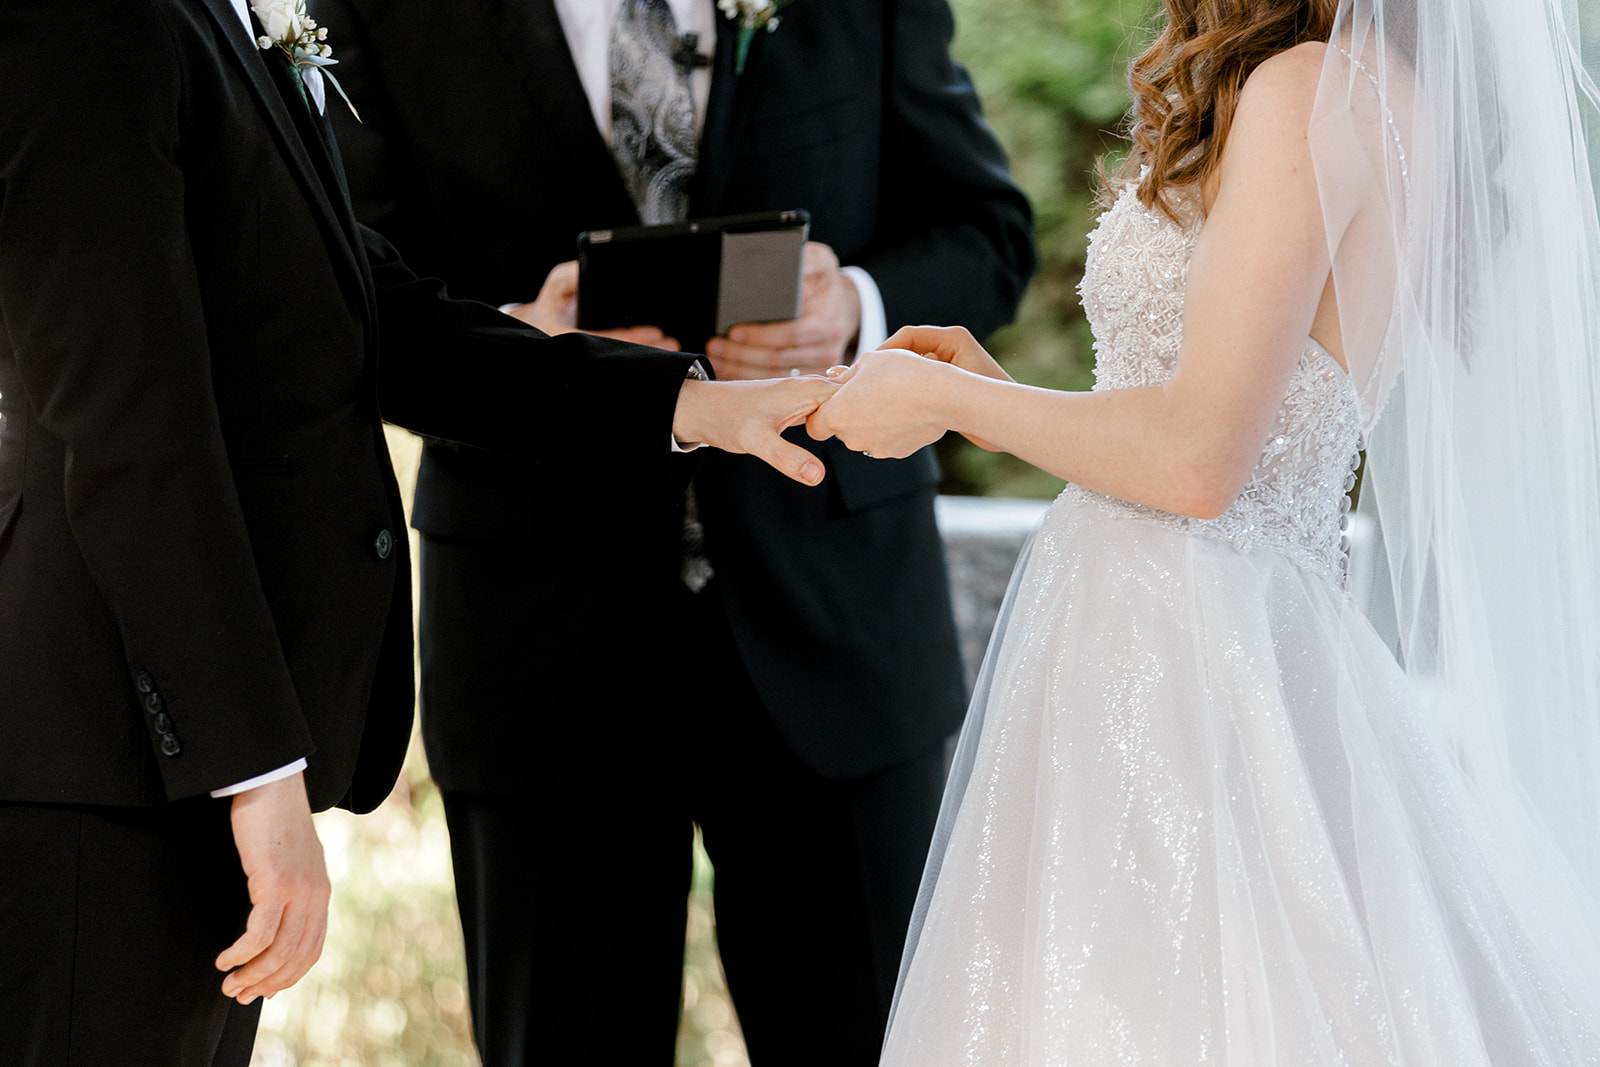 An Elegant Wedding Day At Crystal Gardens | Maria + Dustin